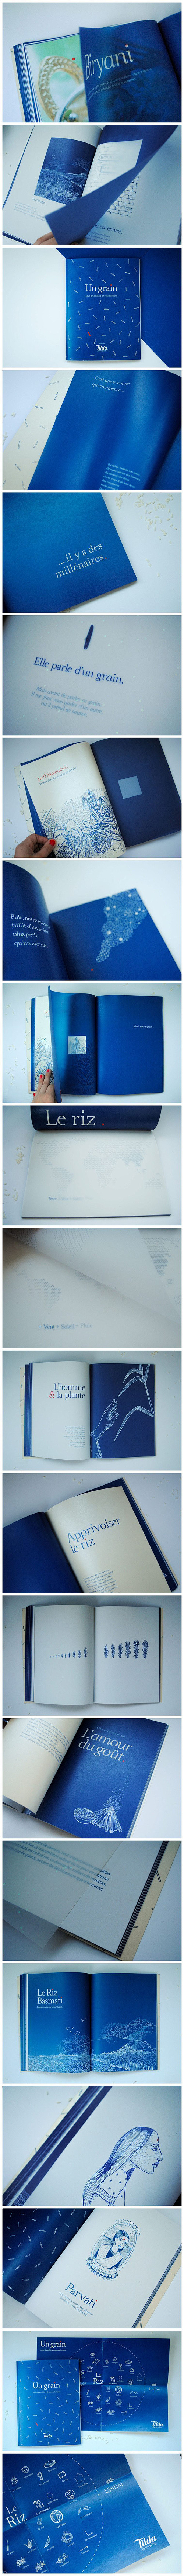 Tilda 传奇的大米画册-三个设计师-...